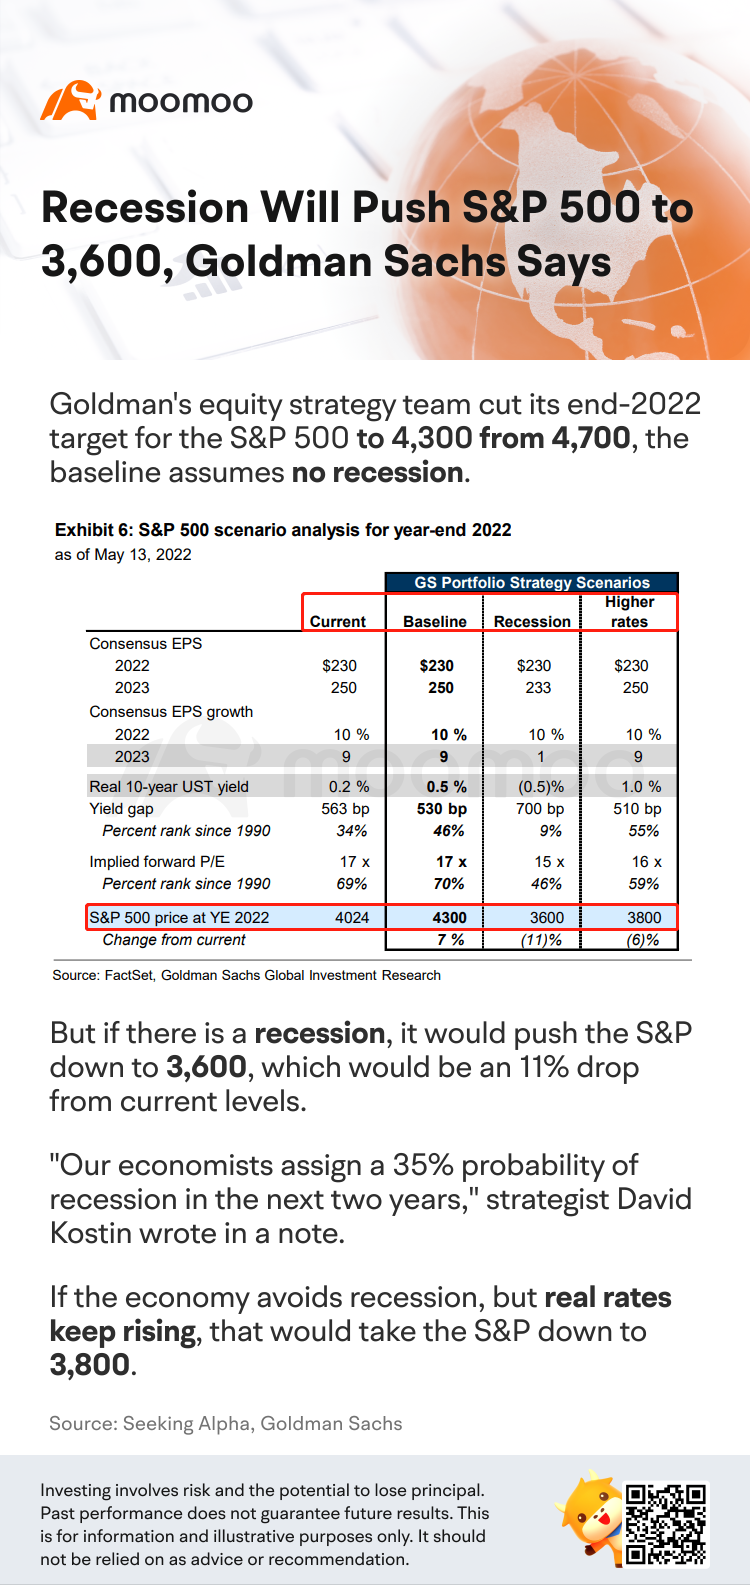 ゴールドマン・サックスは景気後退でS&P500は3,600まで下がると予想しています。